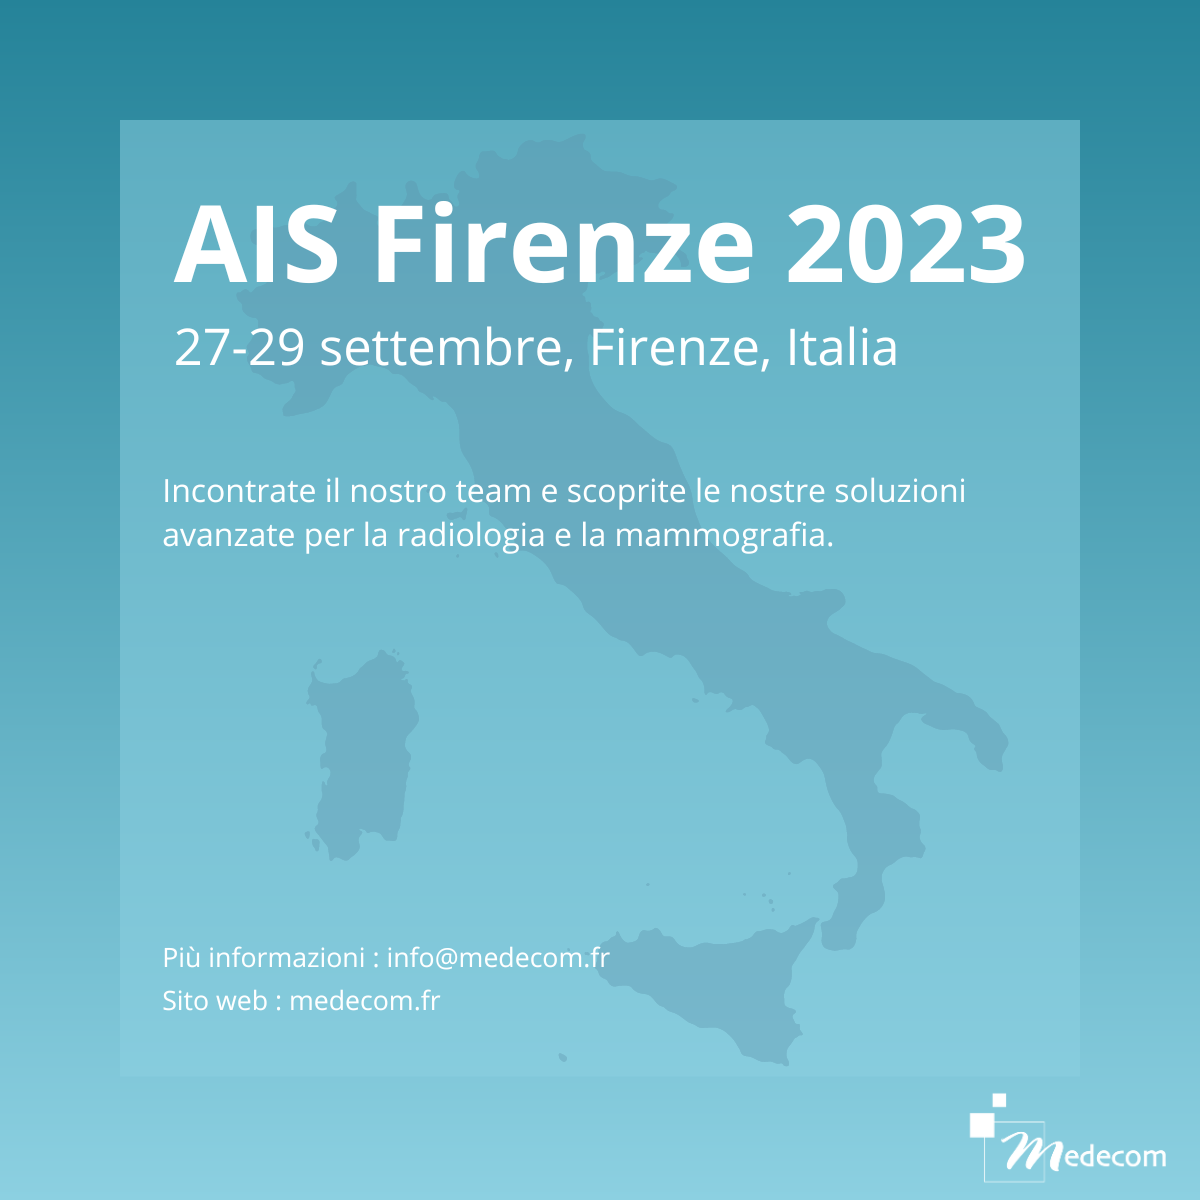 AIS Firenze 2023